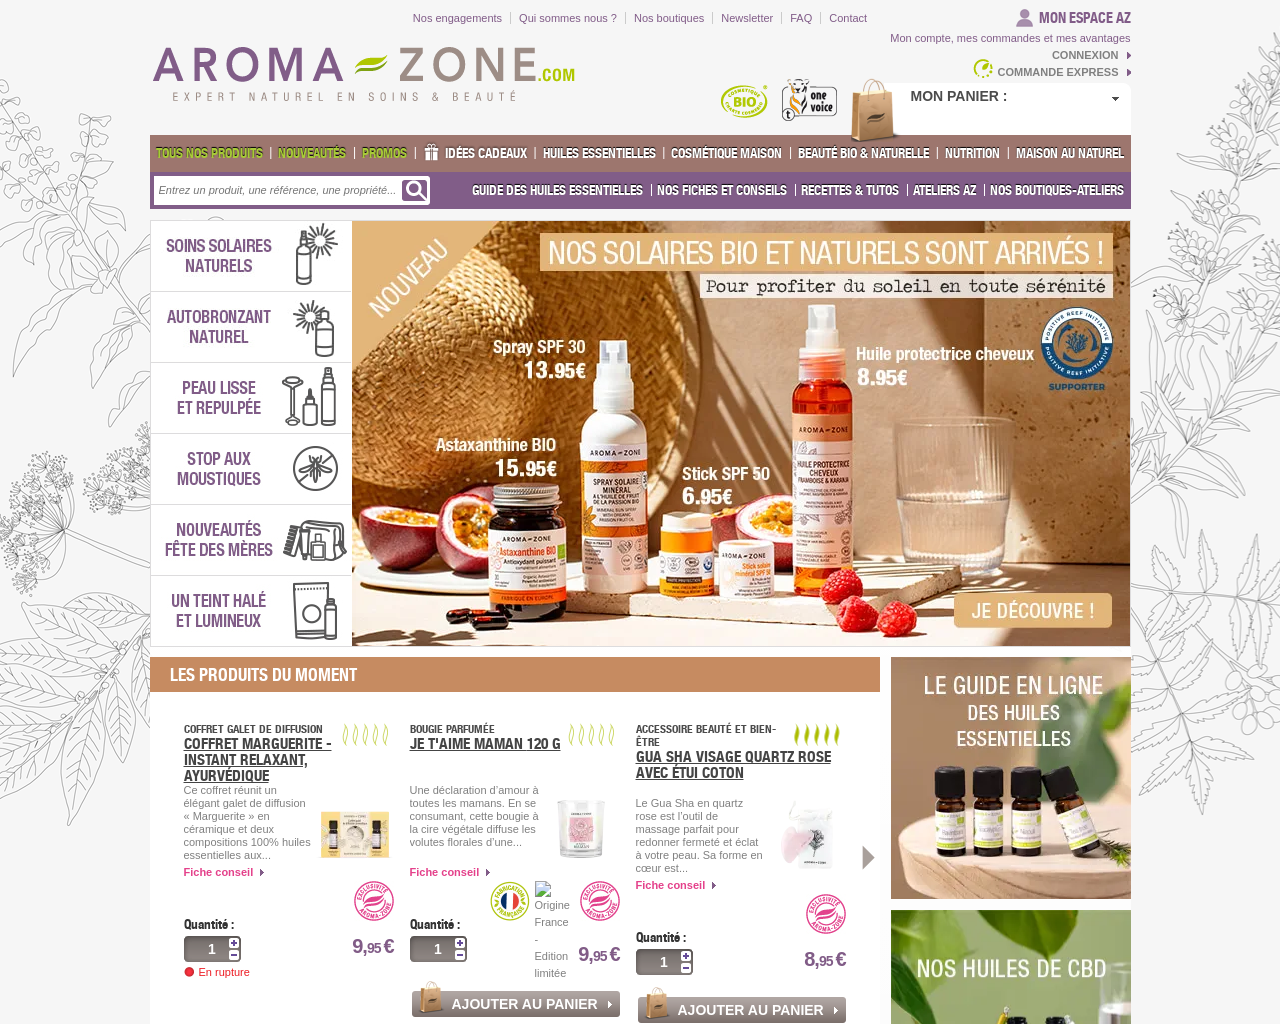 www.aroma-zone.com